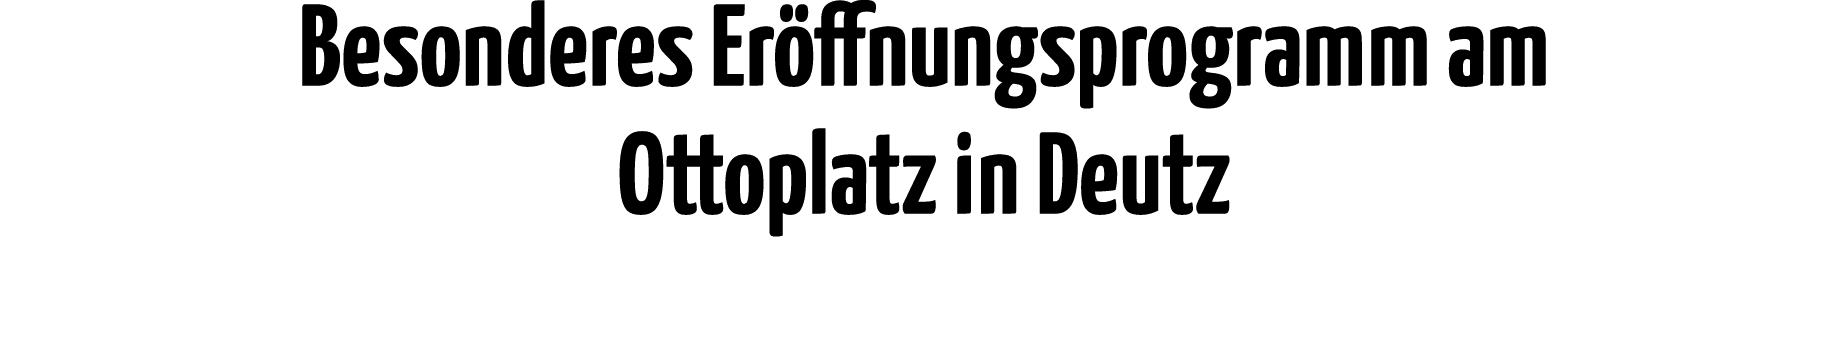 Besonderes Eröffnungsprogramm am Ottoplatz in Deutz 